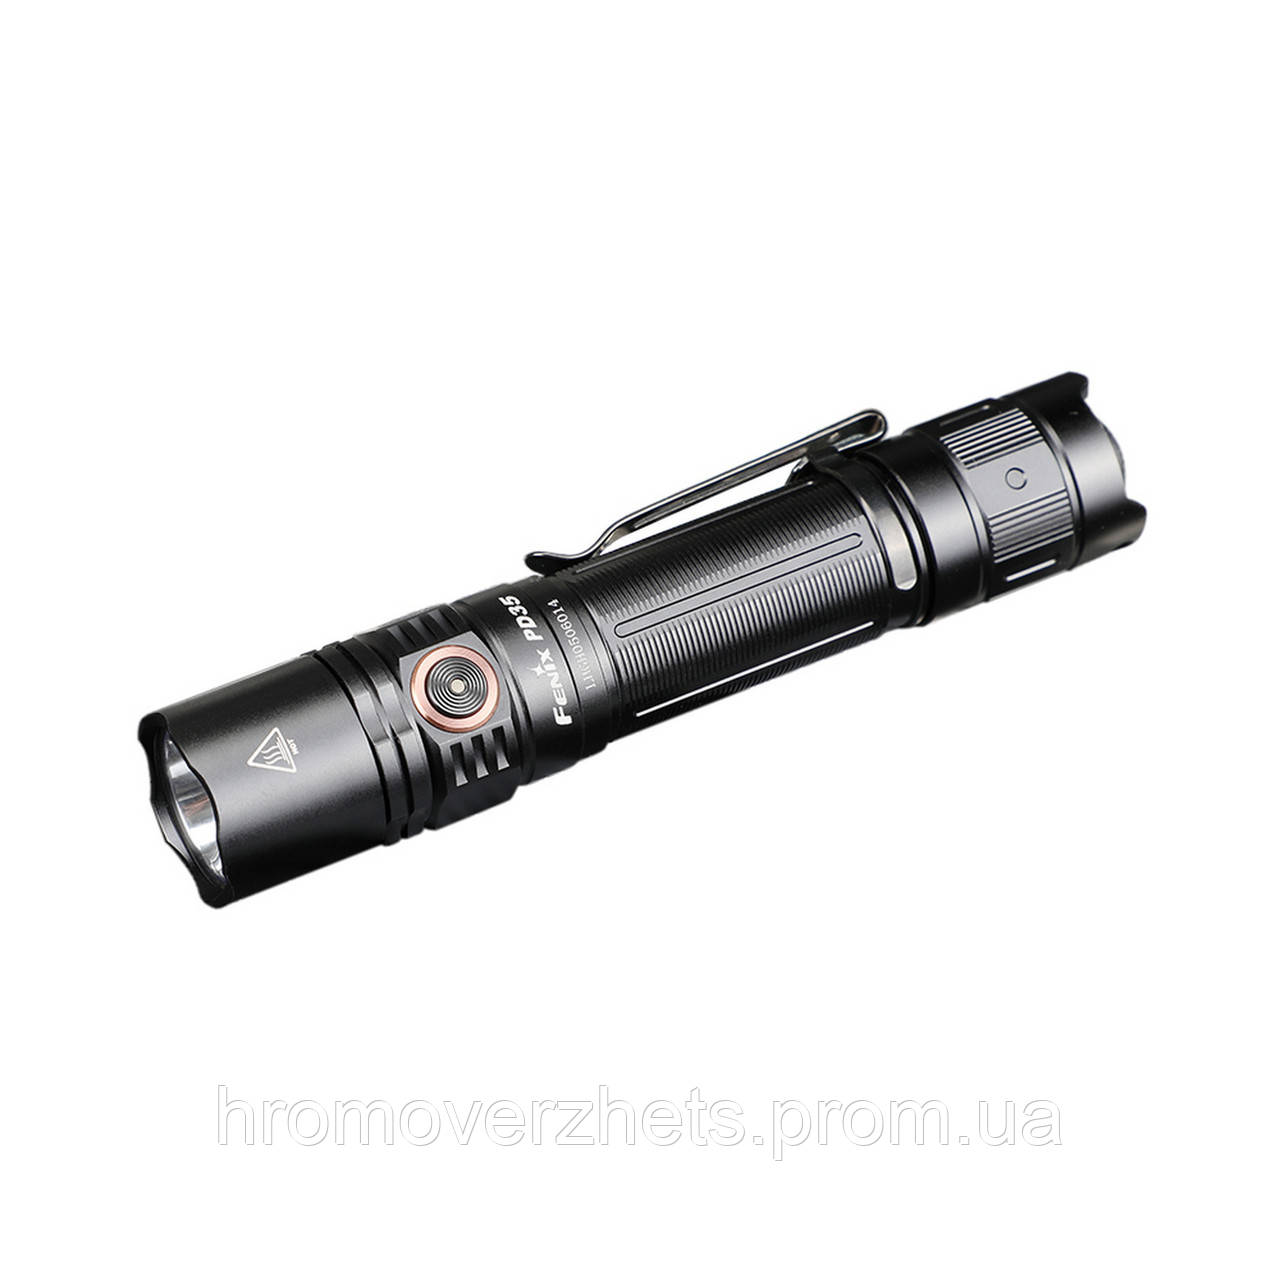 Ліхтар ручний Fenix PD35 V3.0, Чорний, Ручний, Акумулятор, USB, Білий, 1700